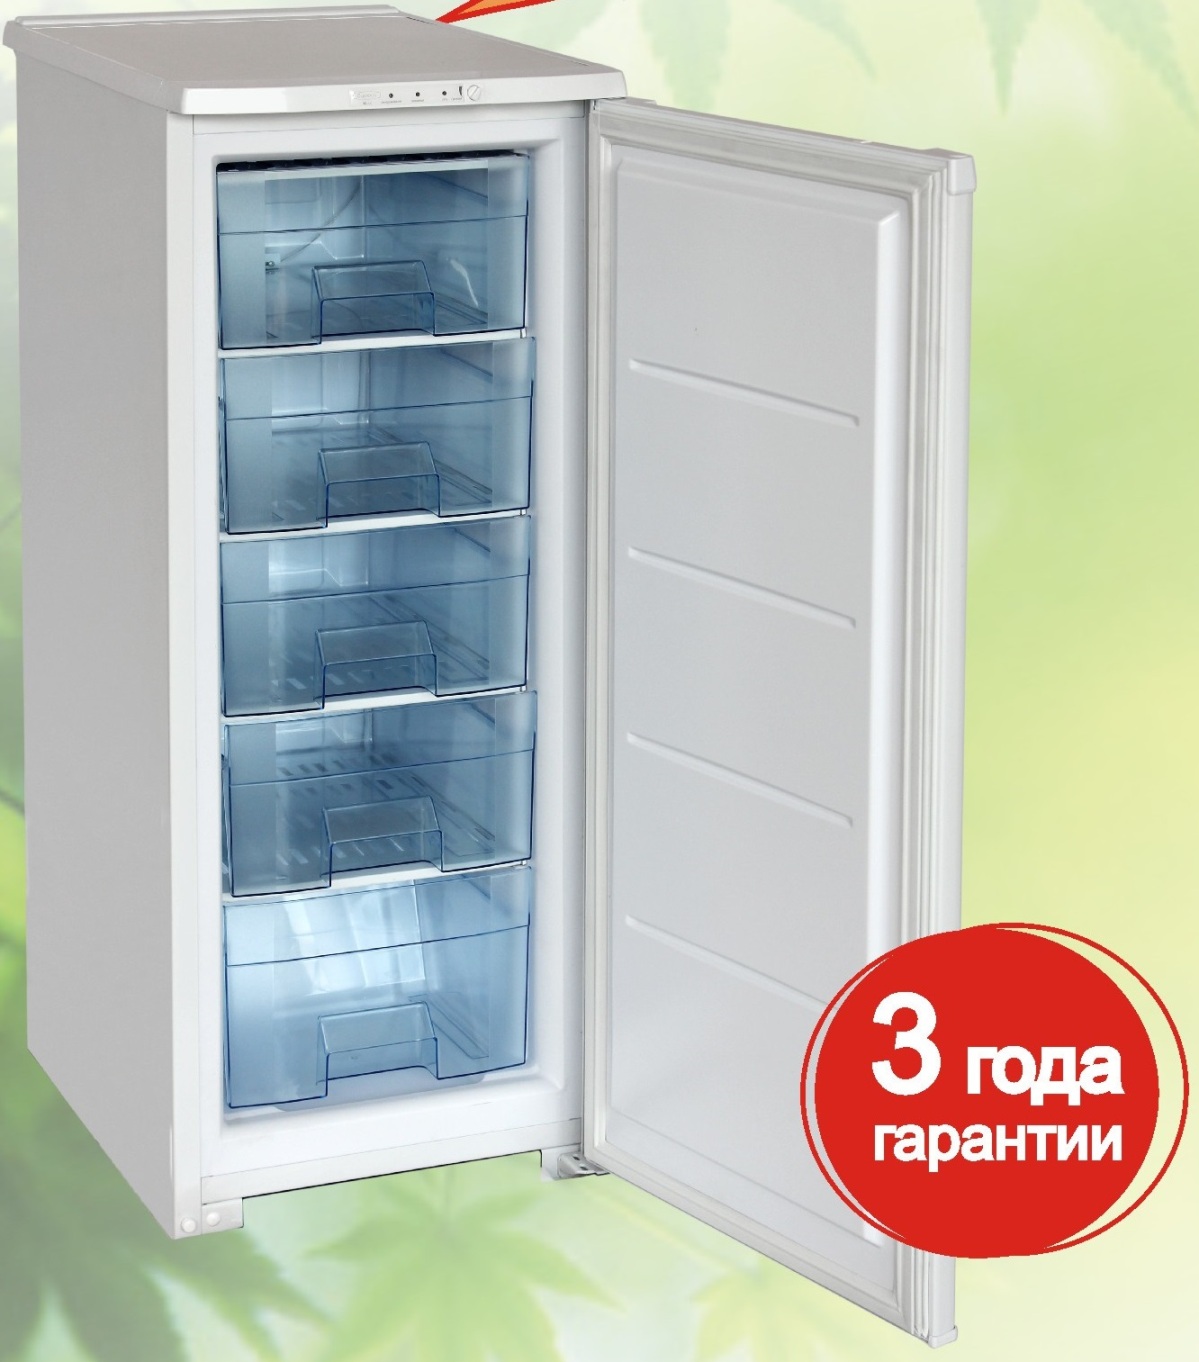 Где Купить Морозильную Камеру Новосибирск